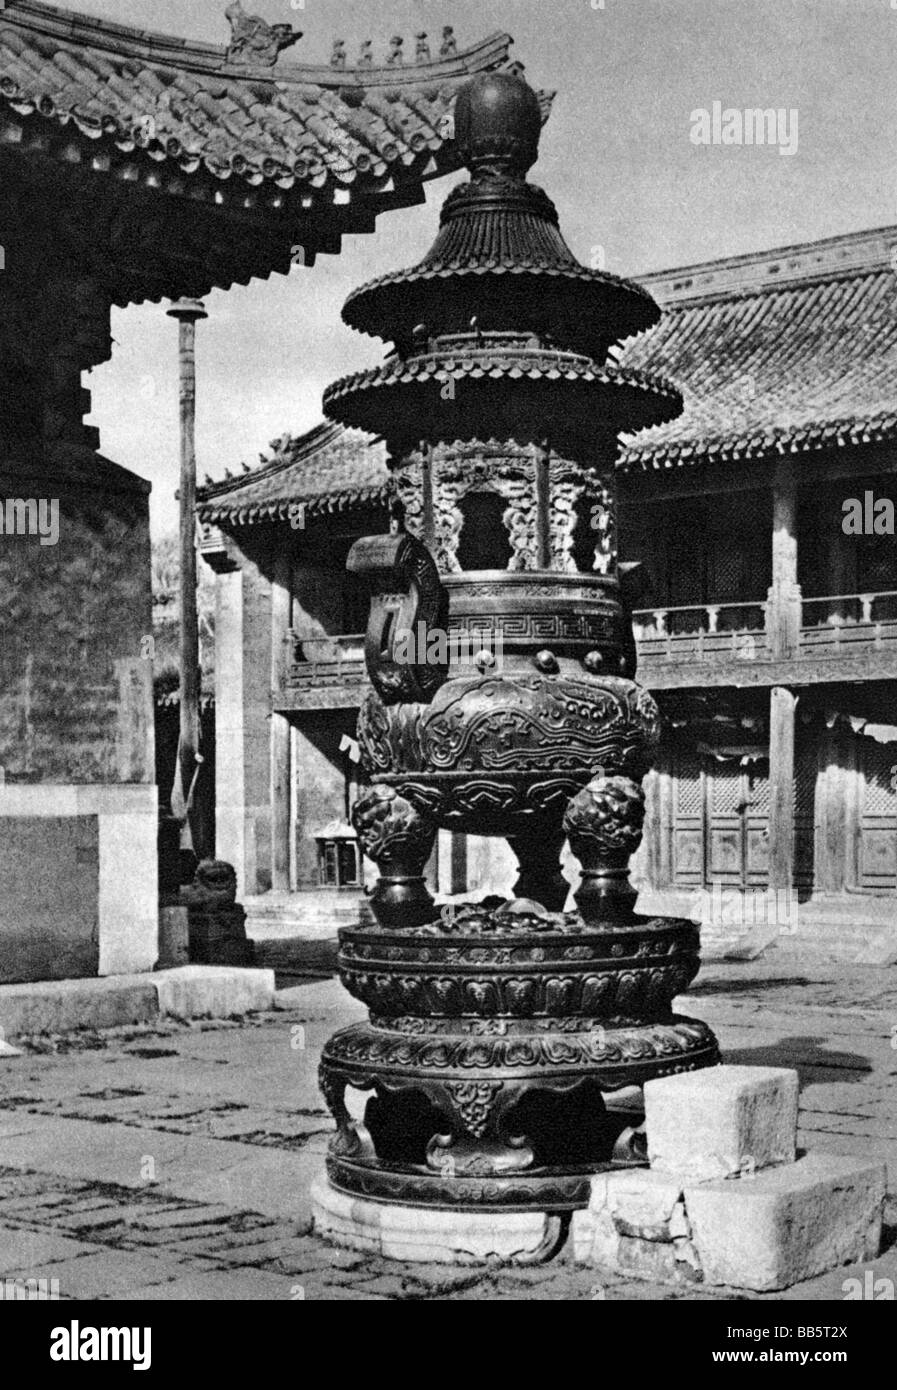 Geografia / viaggi, Cina, Pechino, il Tempio dei Lama, incenso urna di bronzo, Asia, religione, xx secolo, la storica, storica, Foto Stock